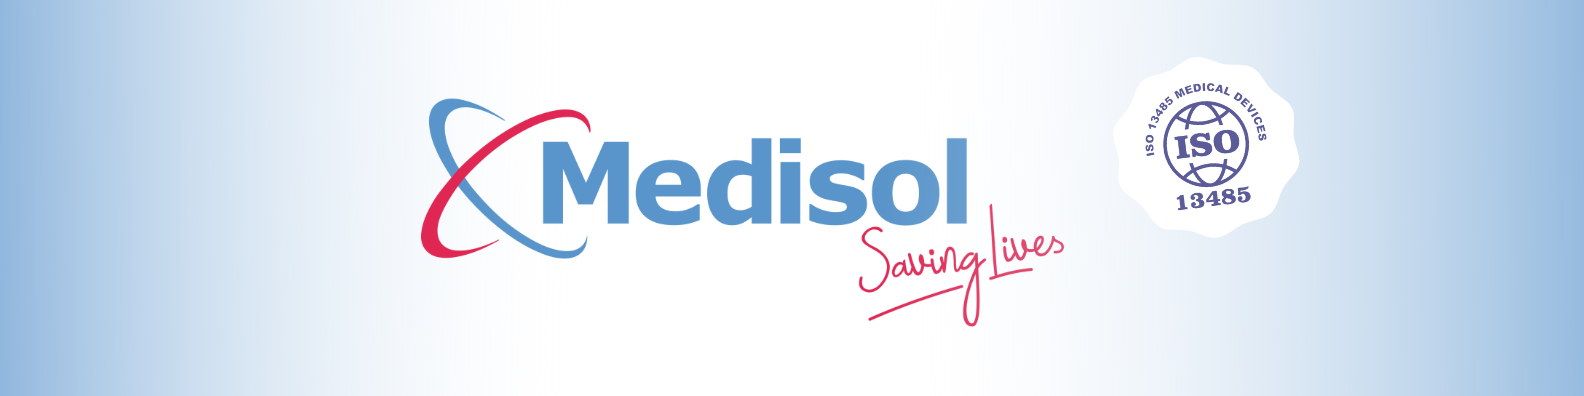 Medisol ISO banner